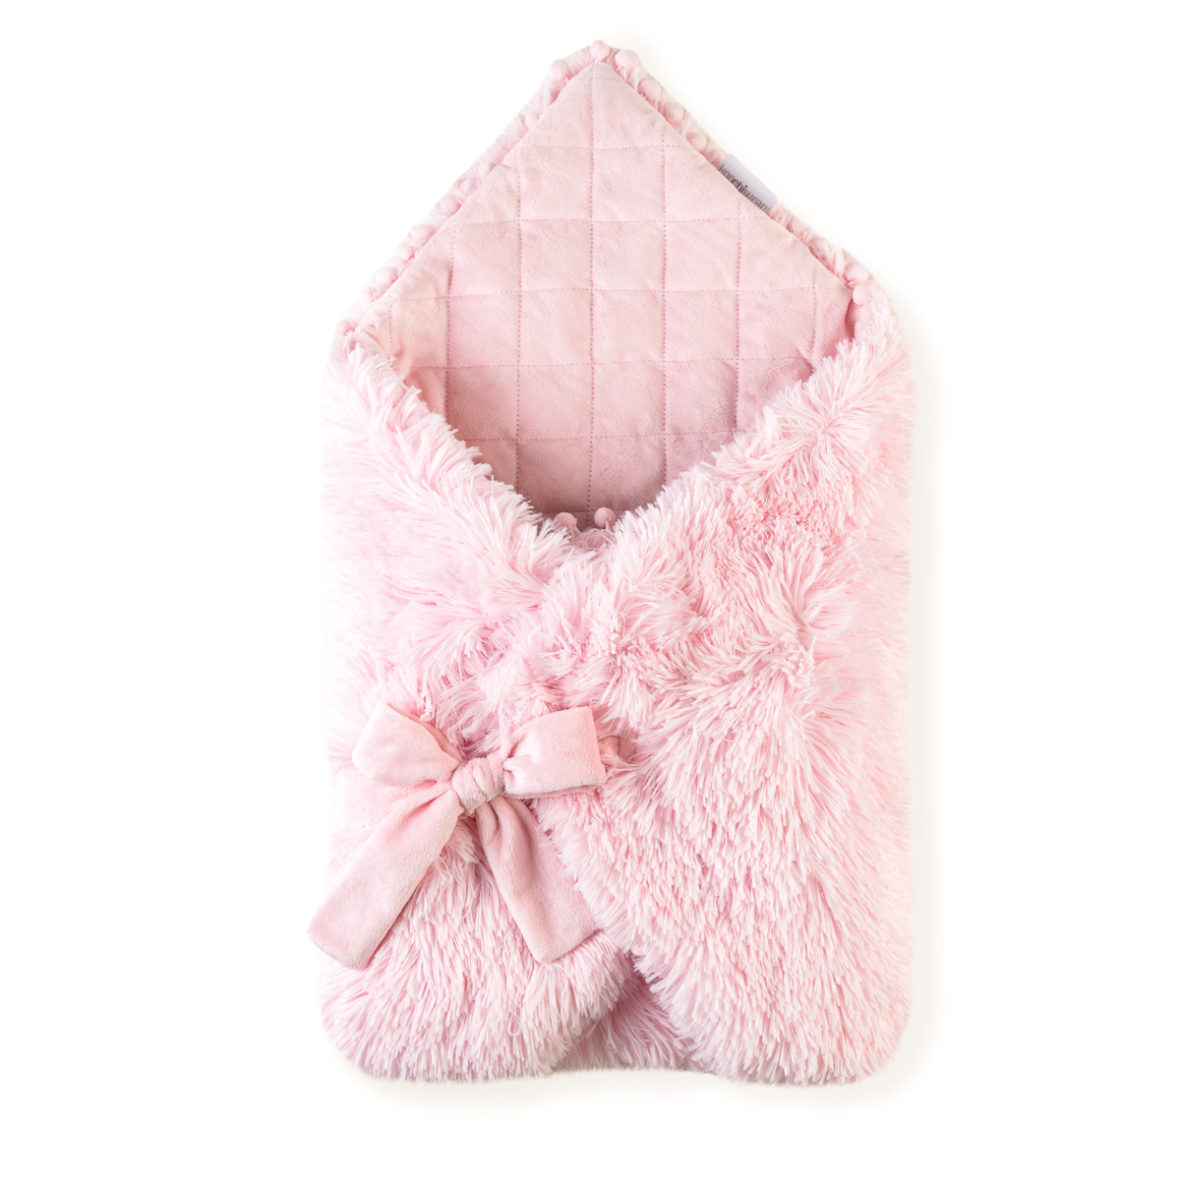 Koochiwrap Fluffy Swaddle Blanket- Pink